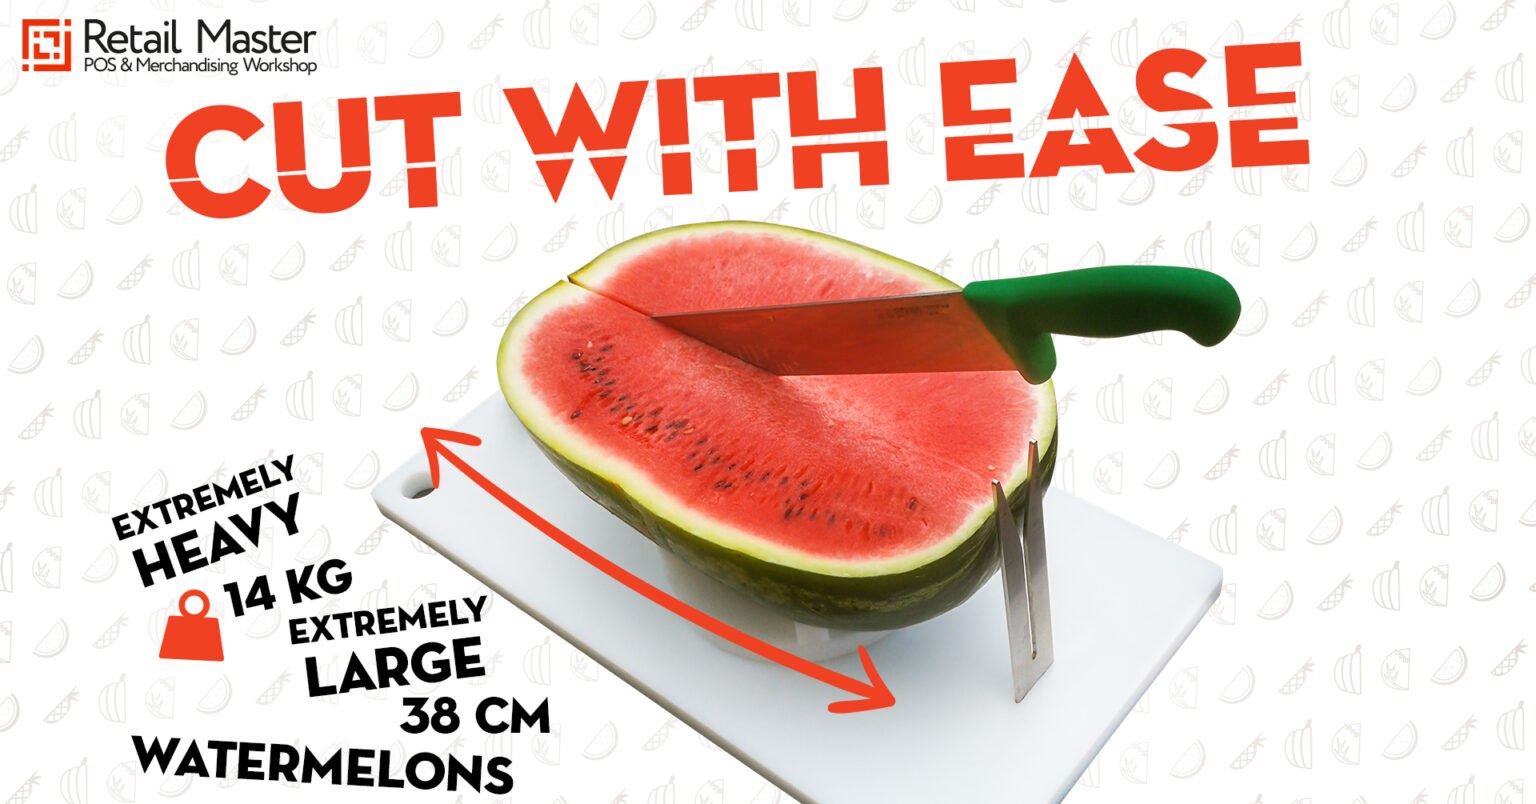 watermelon cutter retailmaster banner